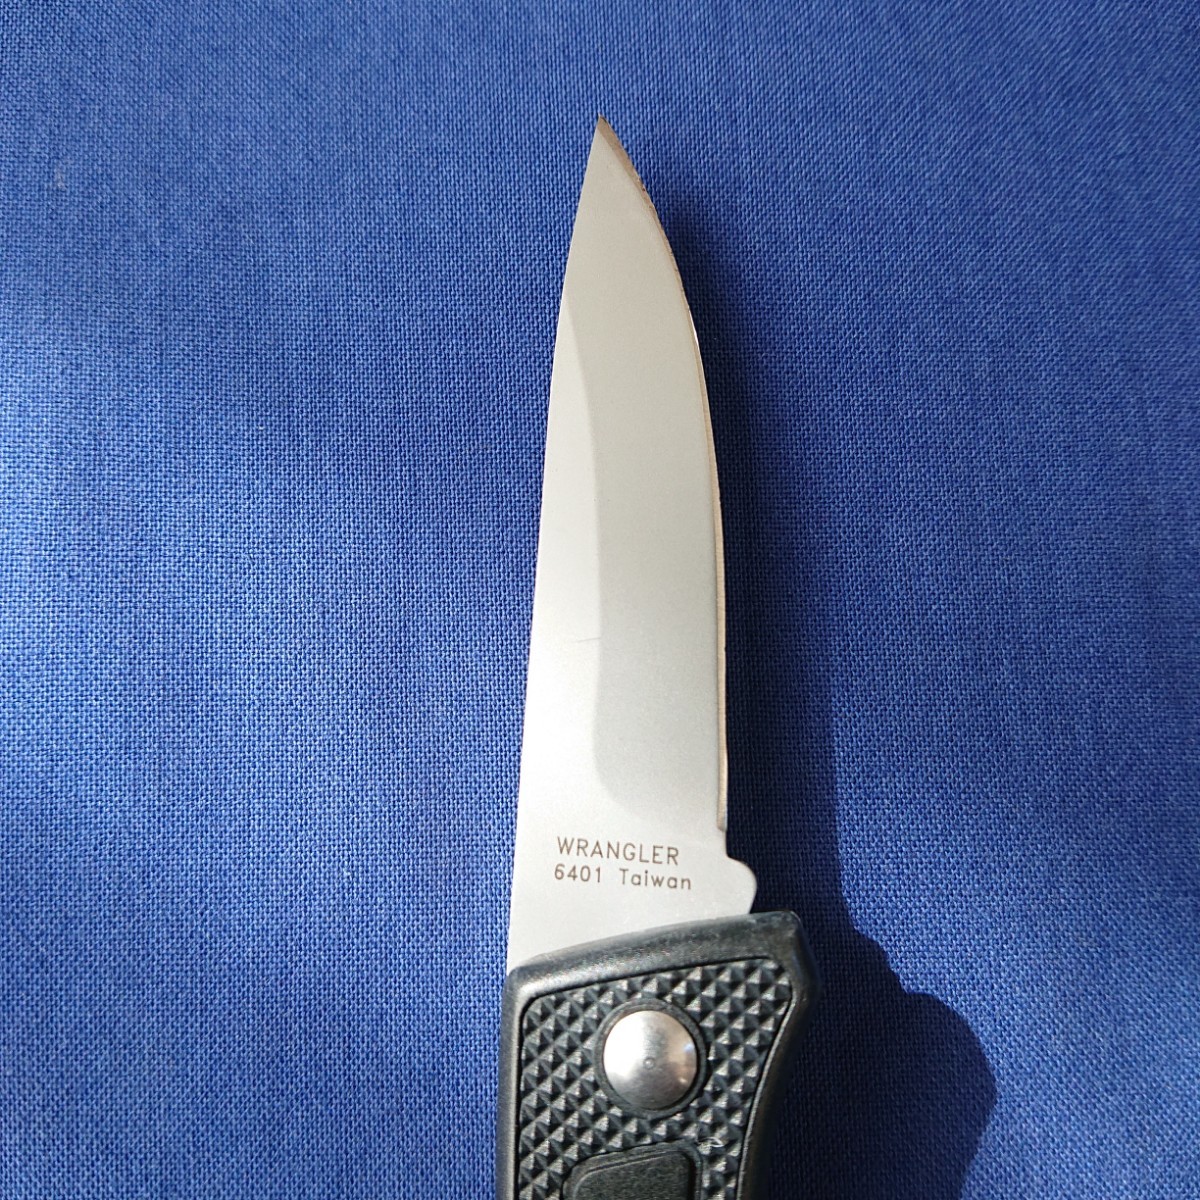 CRKT(コロンビアリバー)WRANGLER Knife (122)の画像6